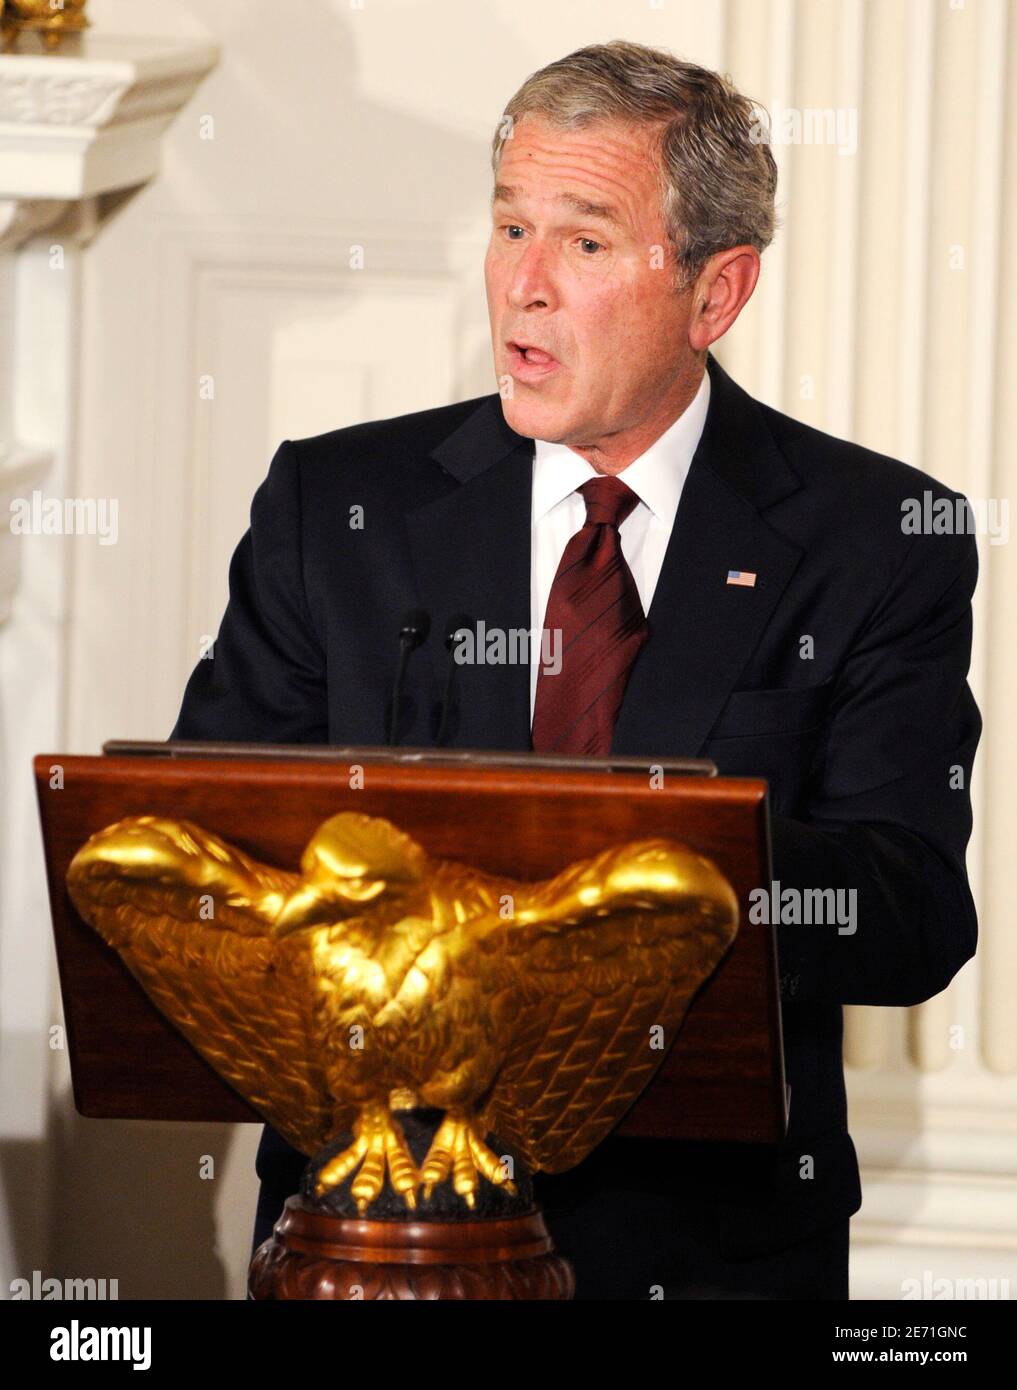 US-Präsident George W. Bush macht Bemerkungen beim Iftaar-Abendessen im Weißen Haus in Washington am 17. September 2008. Iftaar markiert die Mahlzeit am Ende des Tages während Ramadan serviert, um den Tag zu brechen Fasten. REUTERS/Mike Theiler (USA) Stockfoto